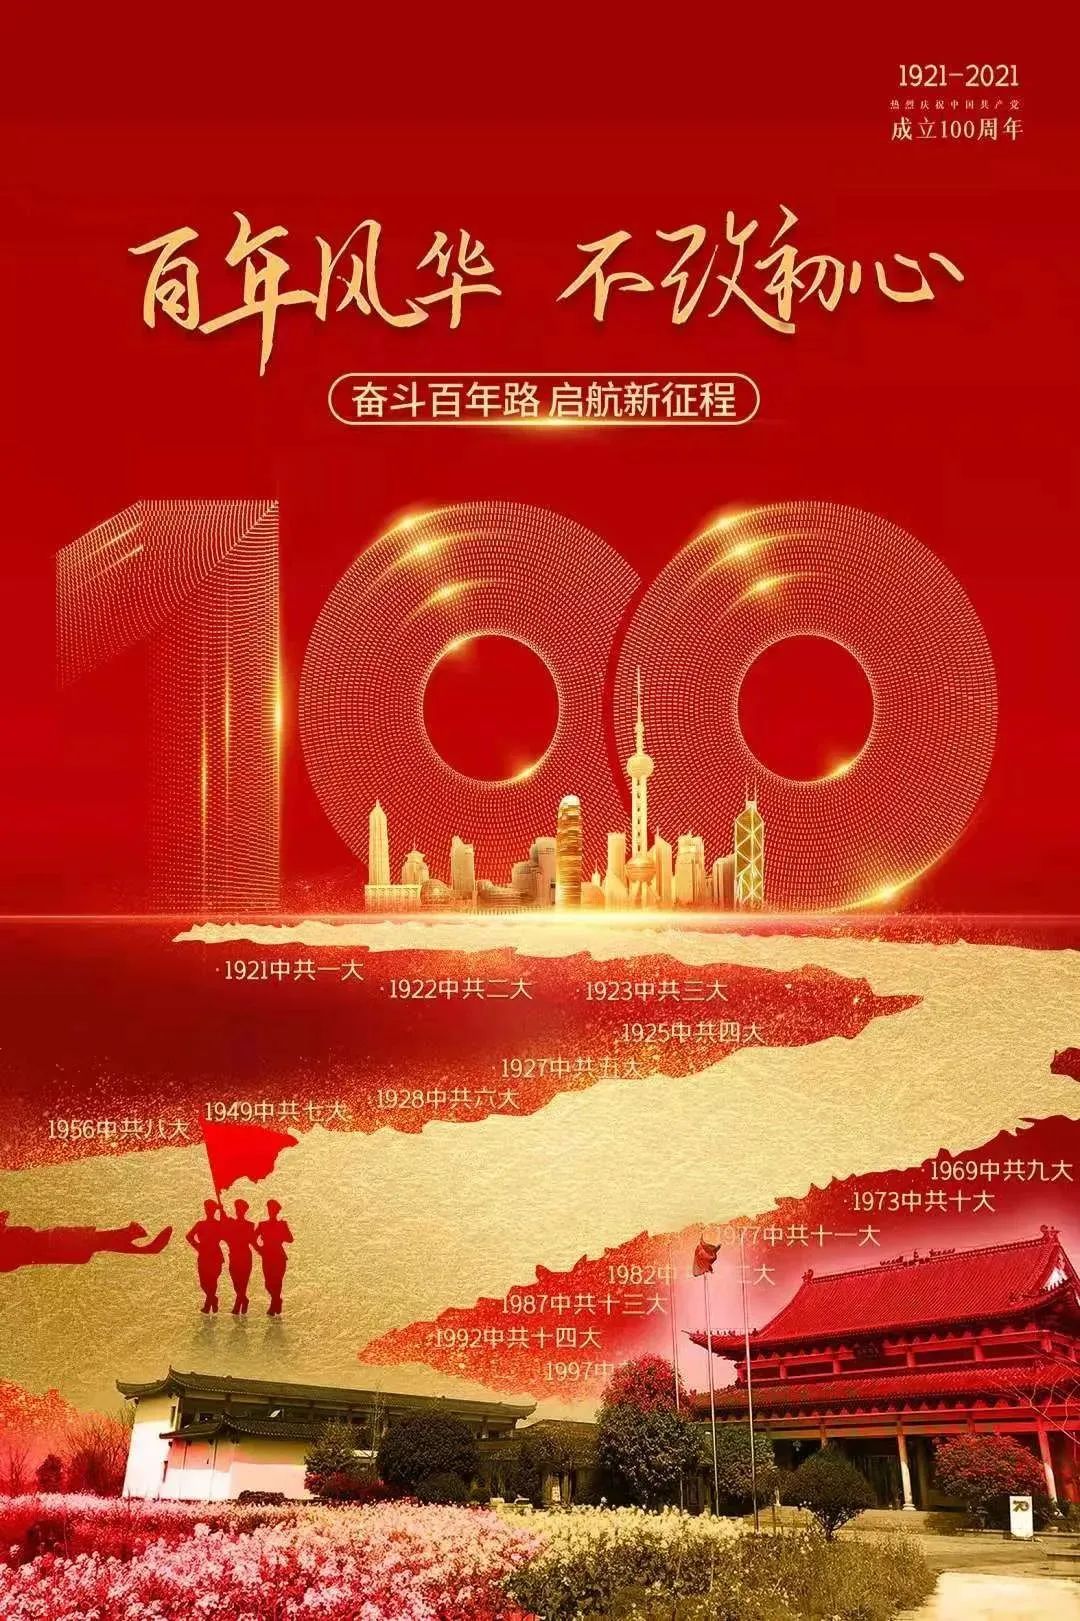 礼赞百年 同心向党 | 寒山学院升国旗观盛会 庆祝中国共产党成立100周年